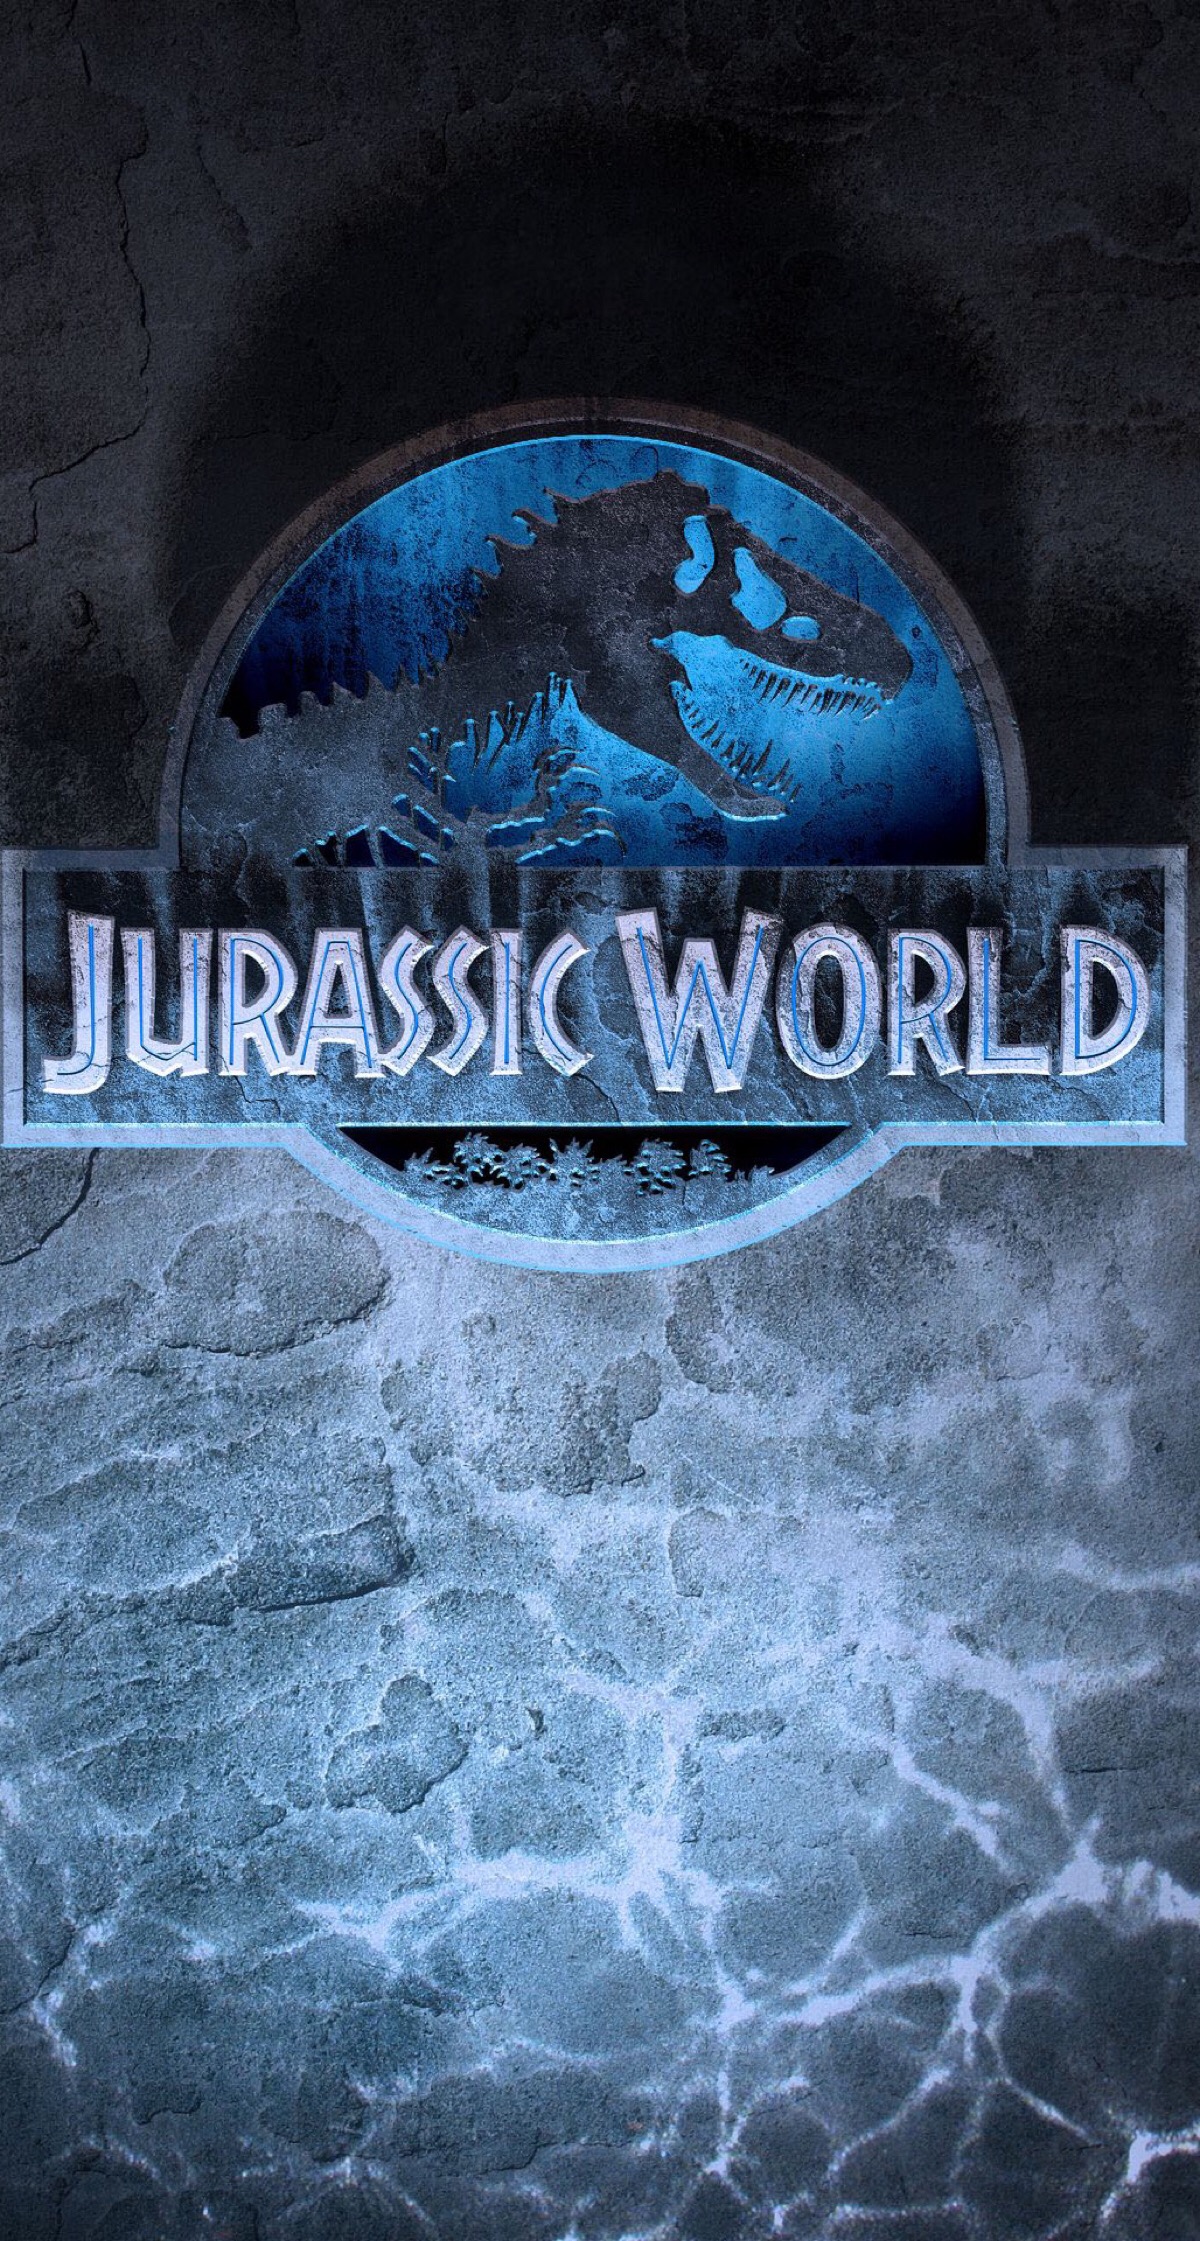 《侏罗纪世界》(jurassic world)是环球影业和传奇影业出品的一部科幻